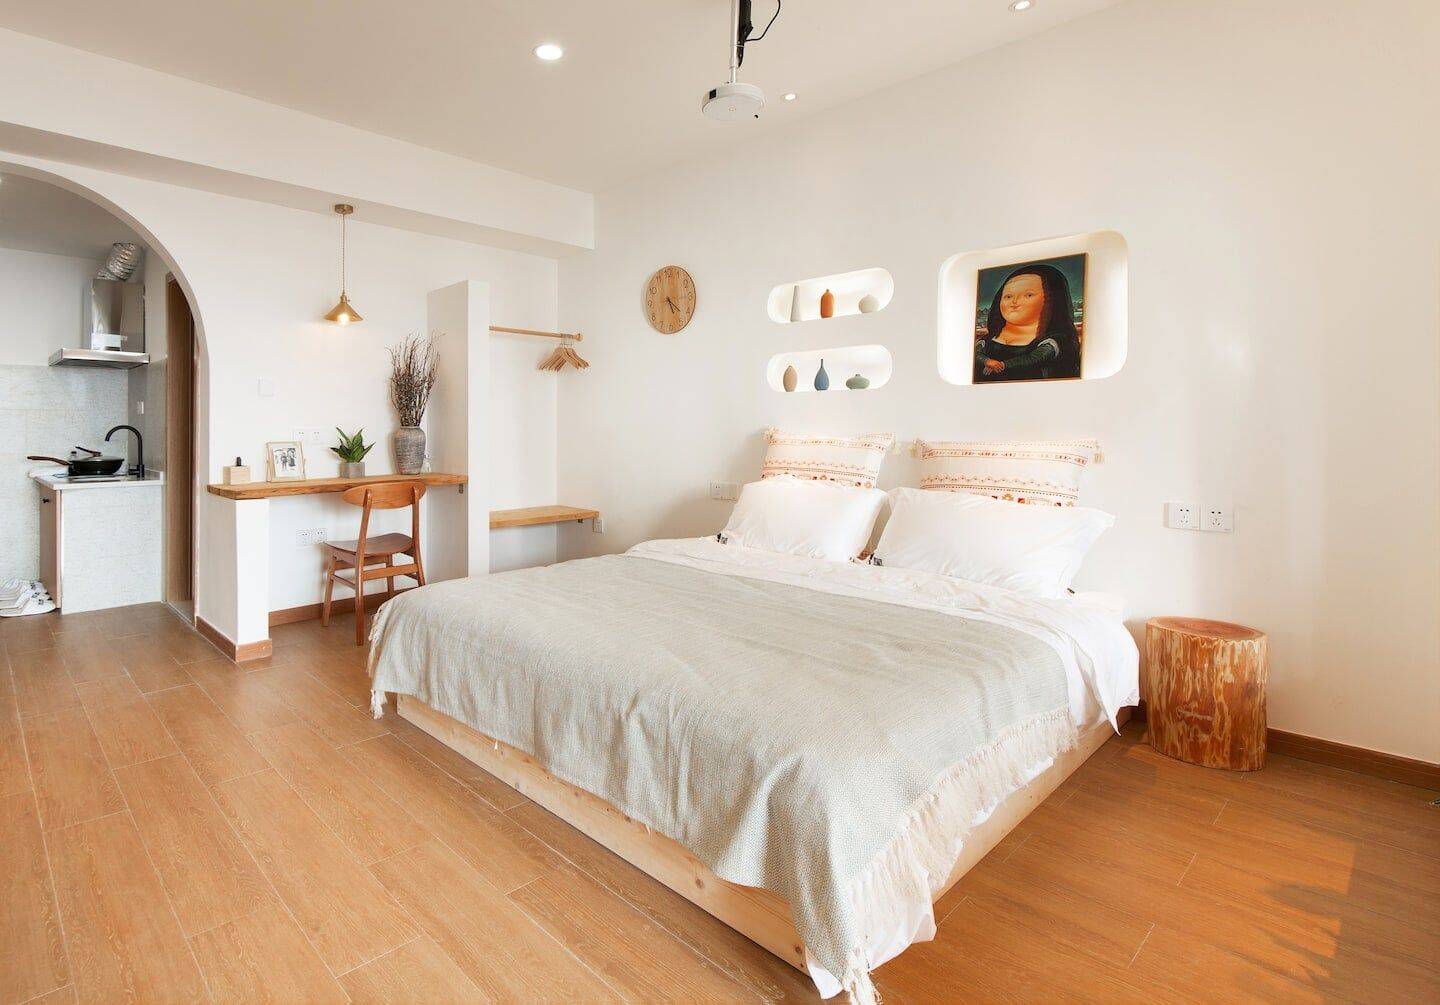 Phòng ngủ là khu vực chính nên có diện tích rộng rãi, đơn giản nhưng có điểm nhấn riêng